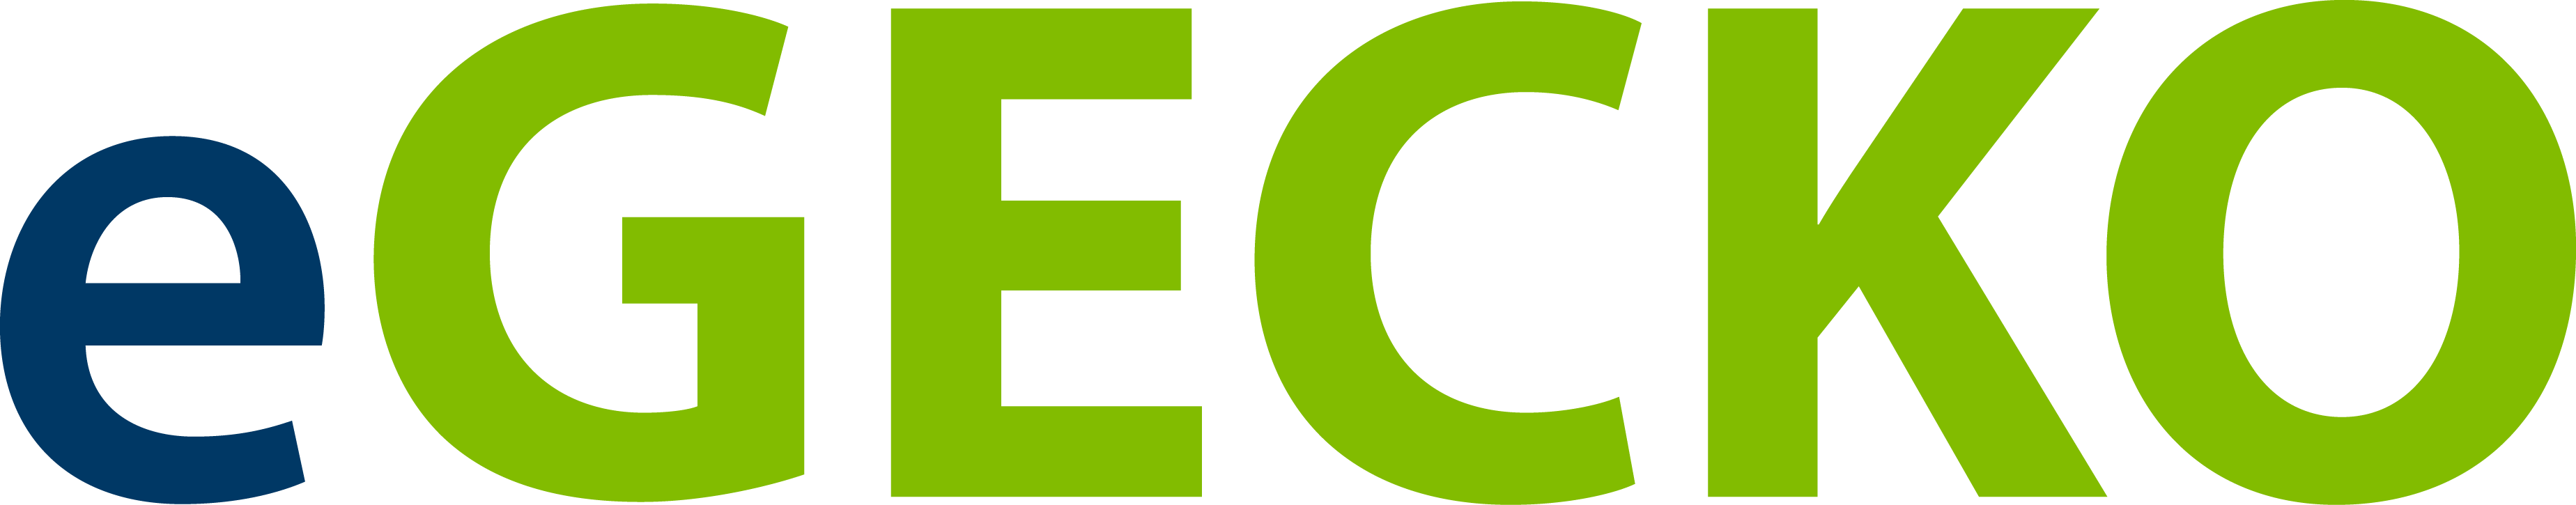 Logo der eGECKO Software von der CSS AG